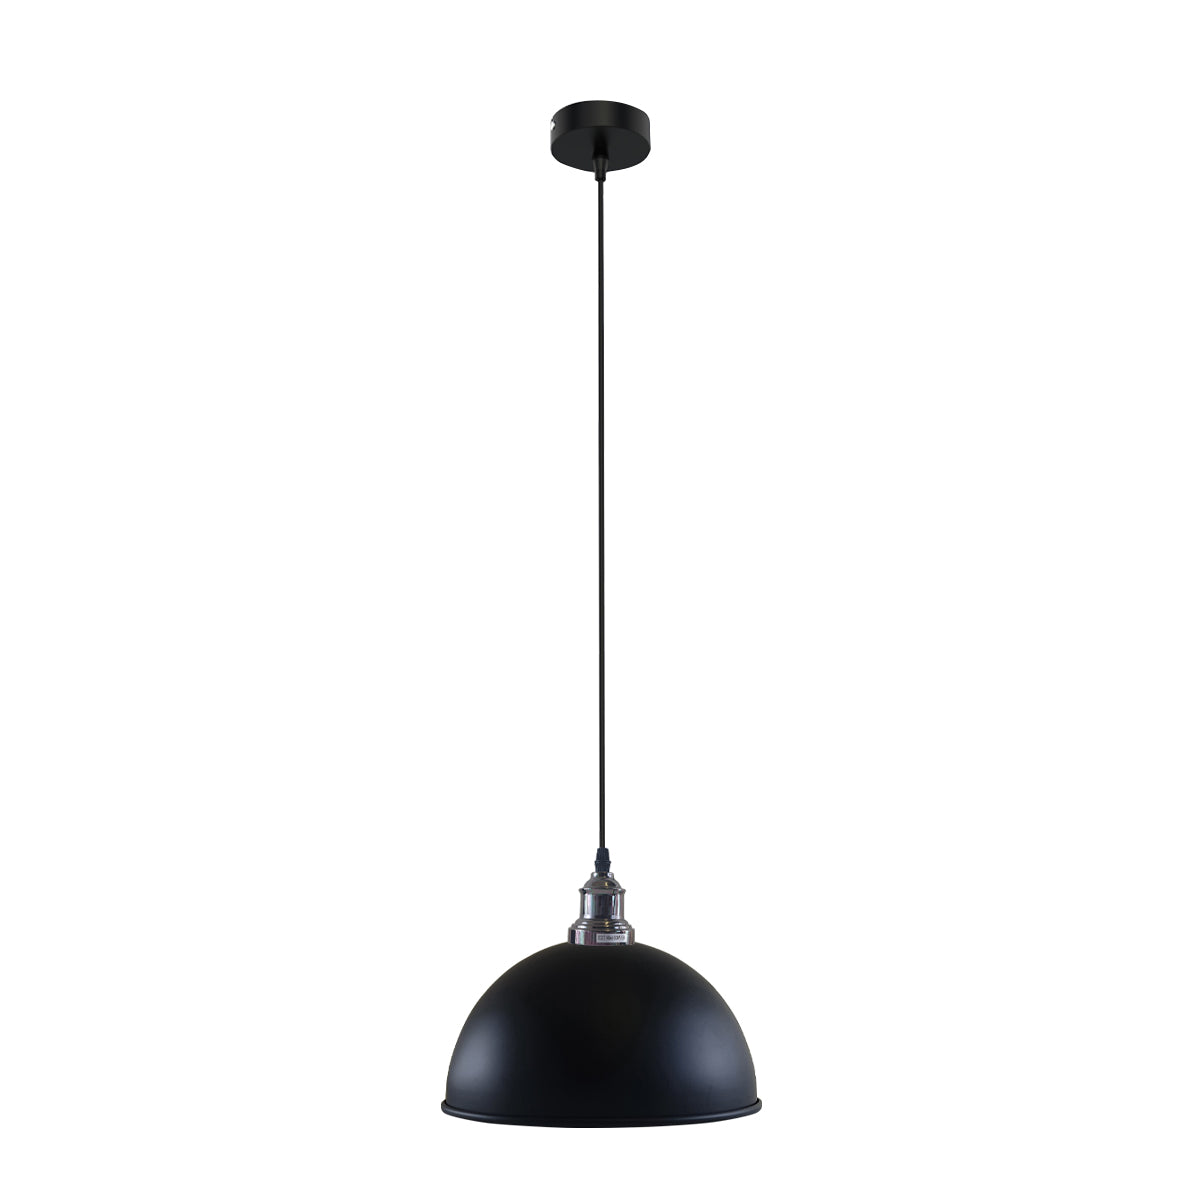 Retro Industrial Ceiling E27 Hanging Pendant Light Shade Black White Inner~1601 - LEDSone UK Ltd